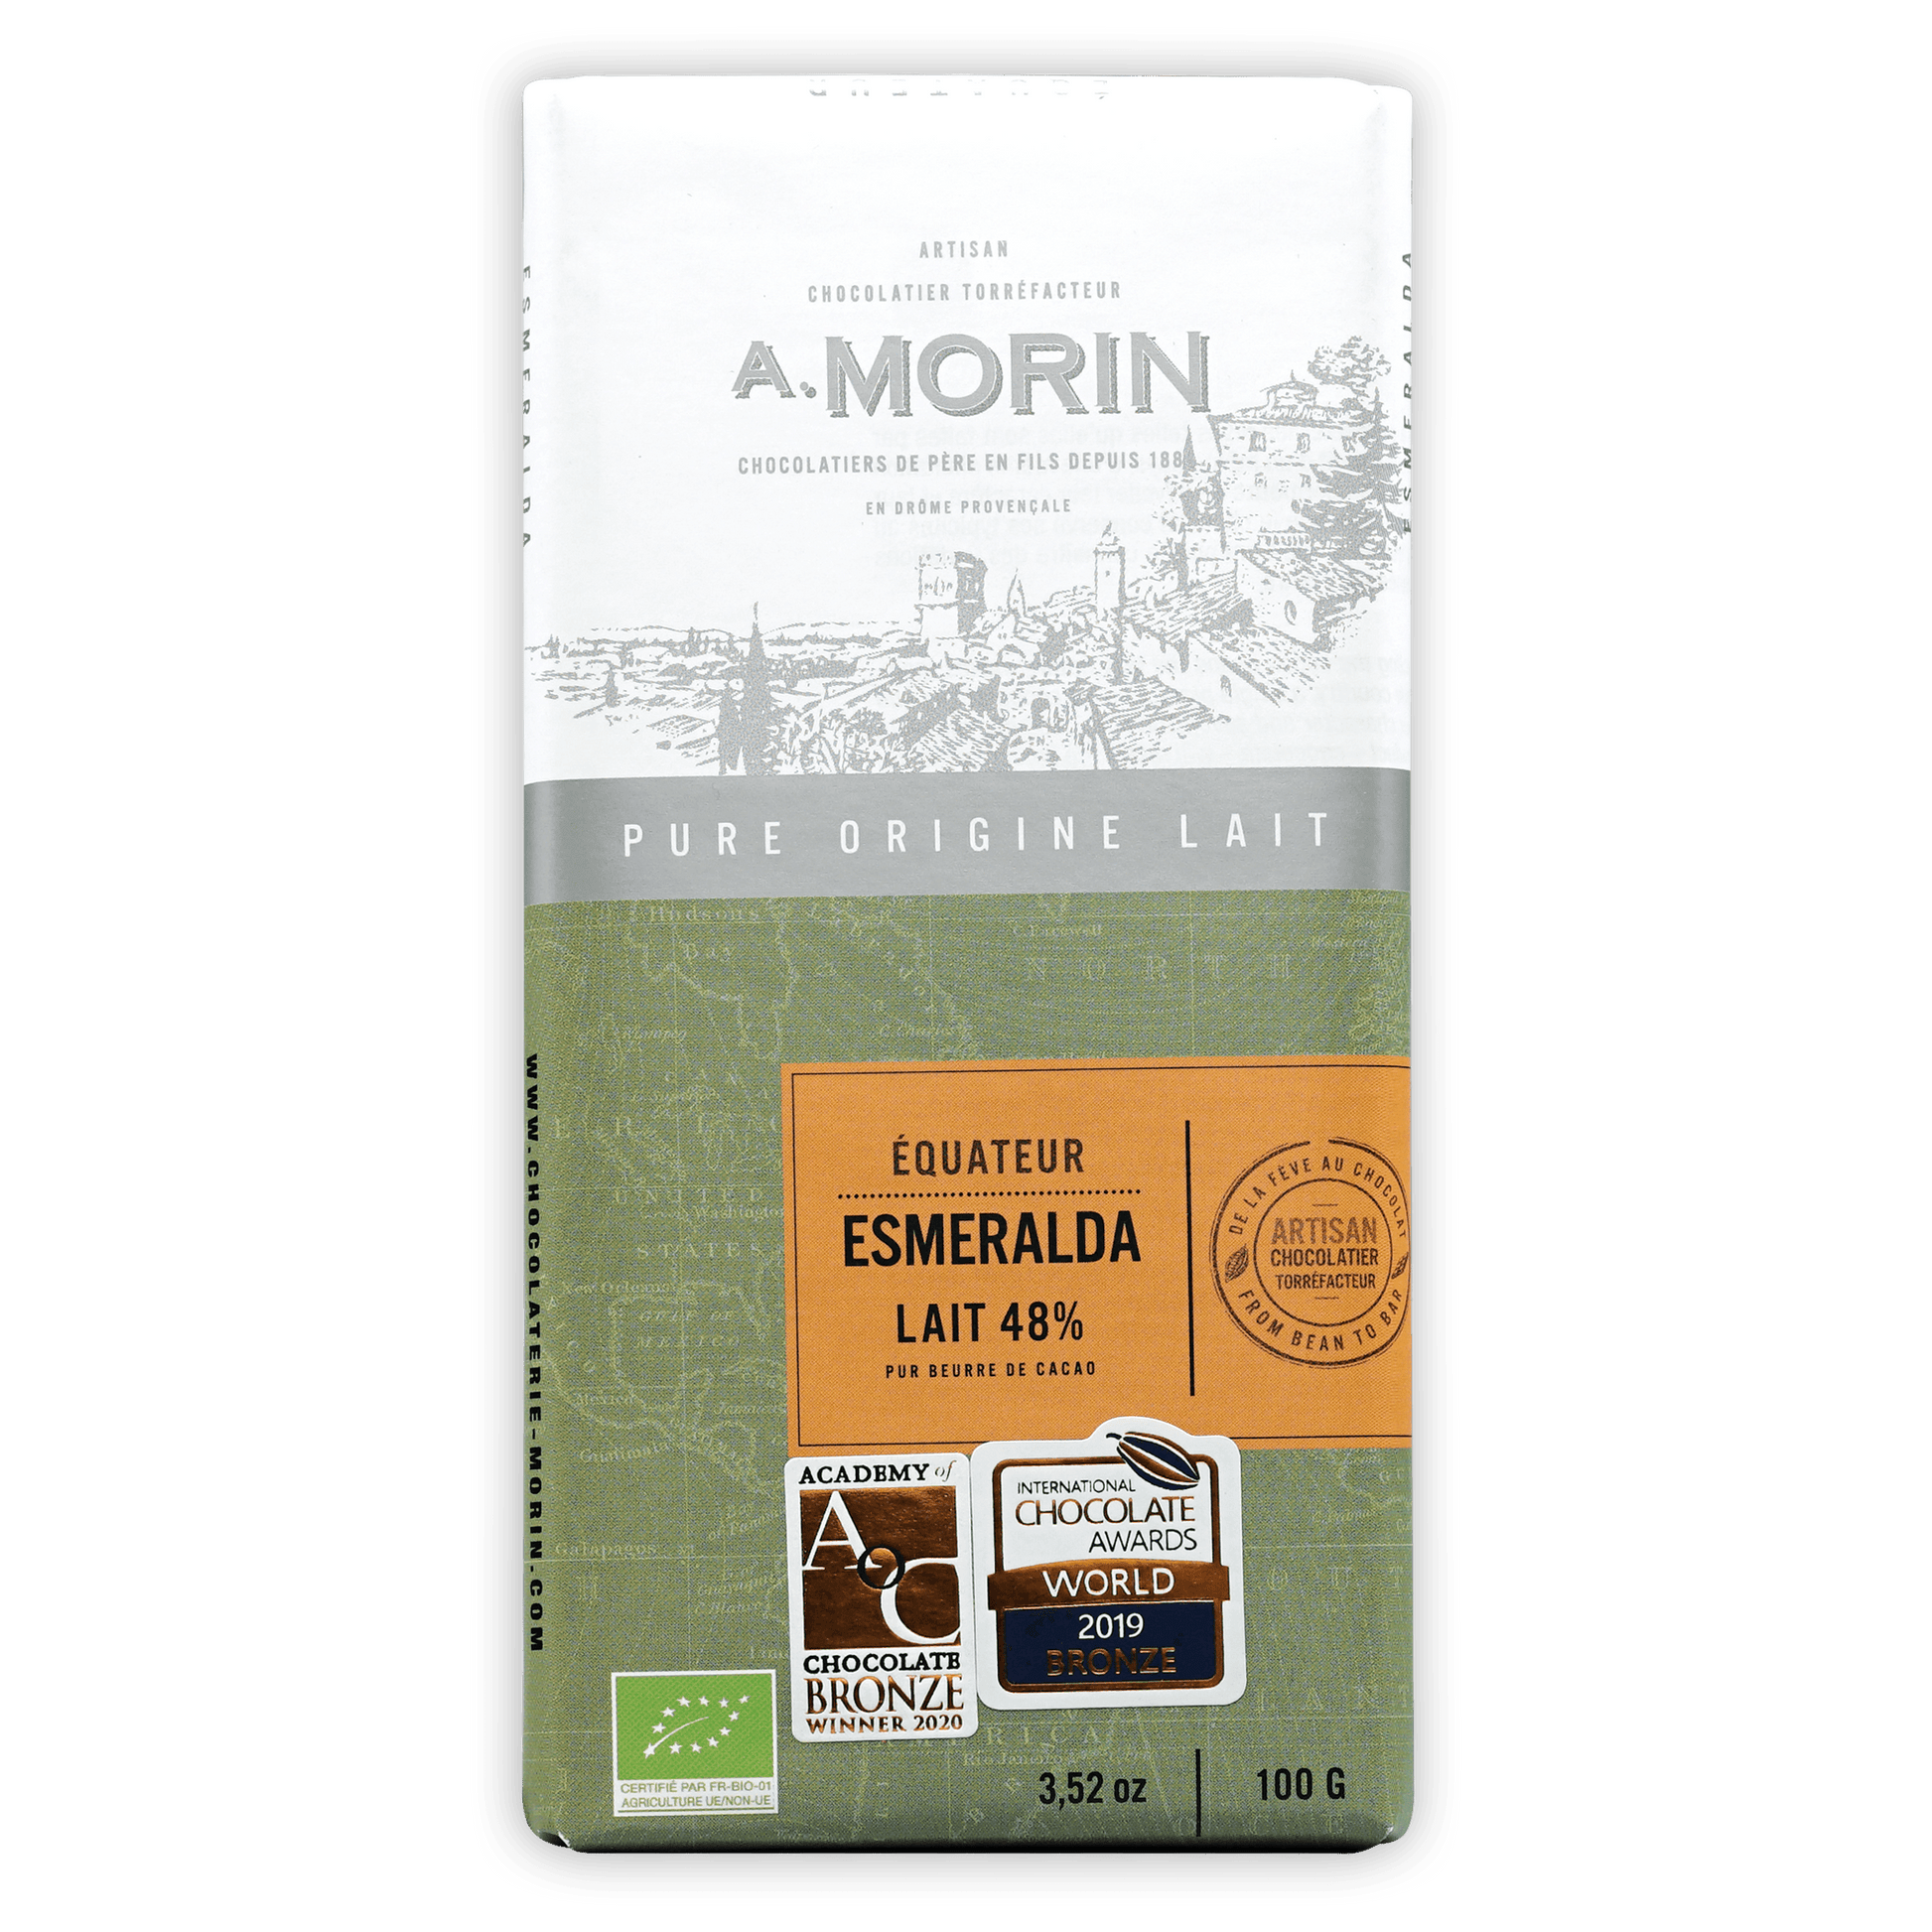 A. Morin Equateur Esmeralda Milk 48%